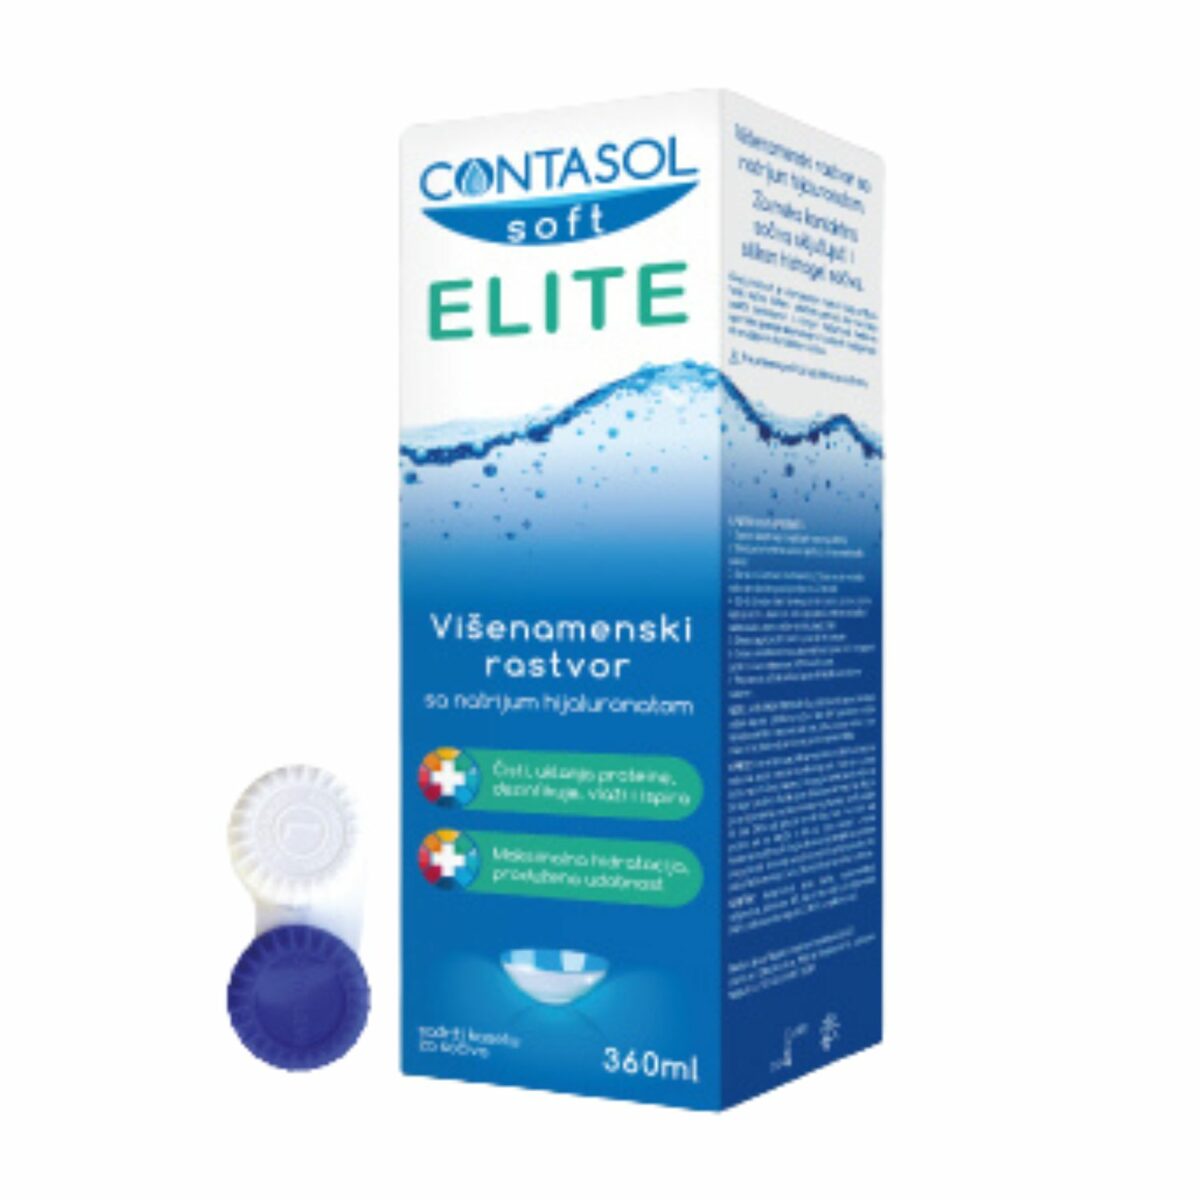 Contasol Soft Elite višenamenski rastvor za meka kontaktna sočiva sa natrijum hijaluronatom  360ml